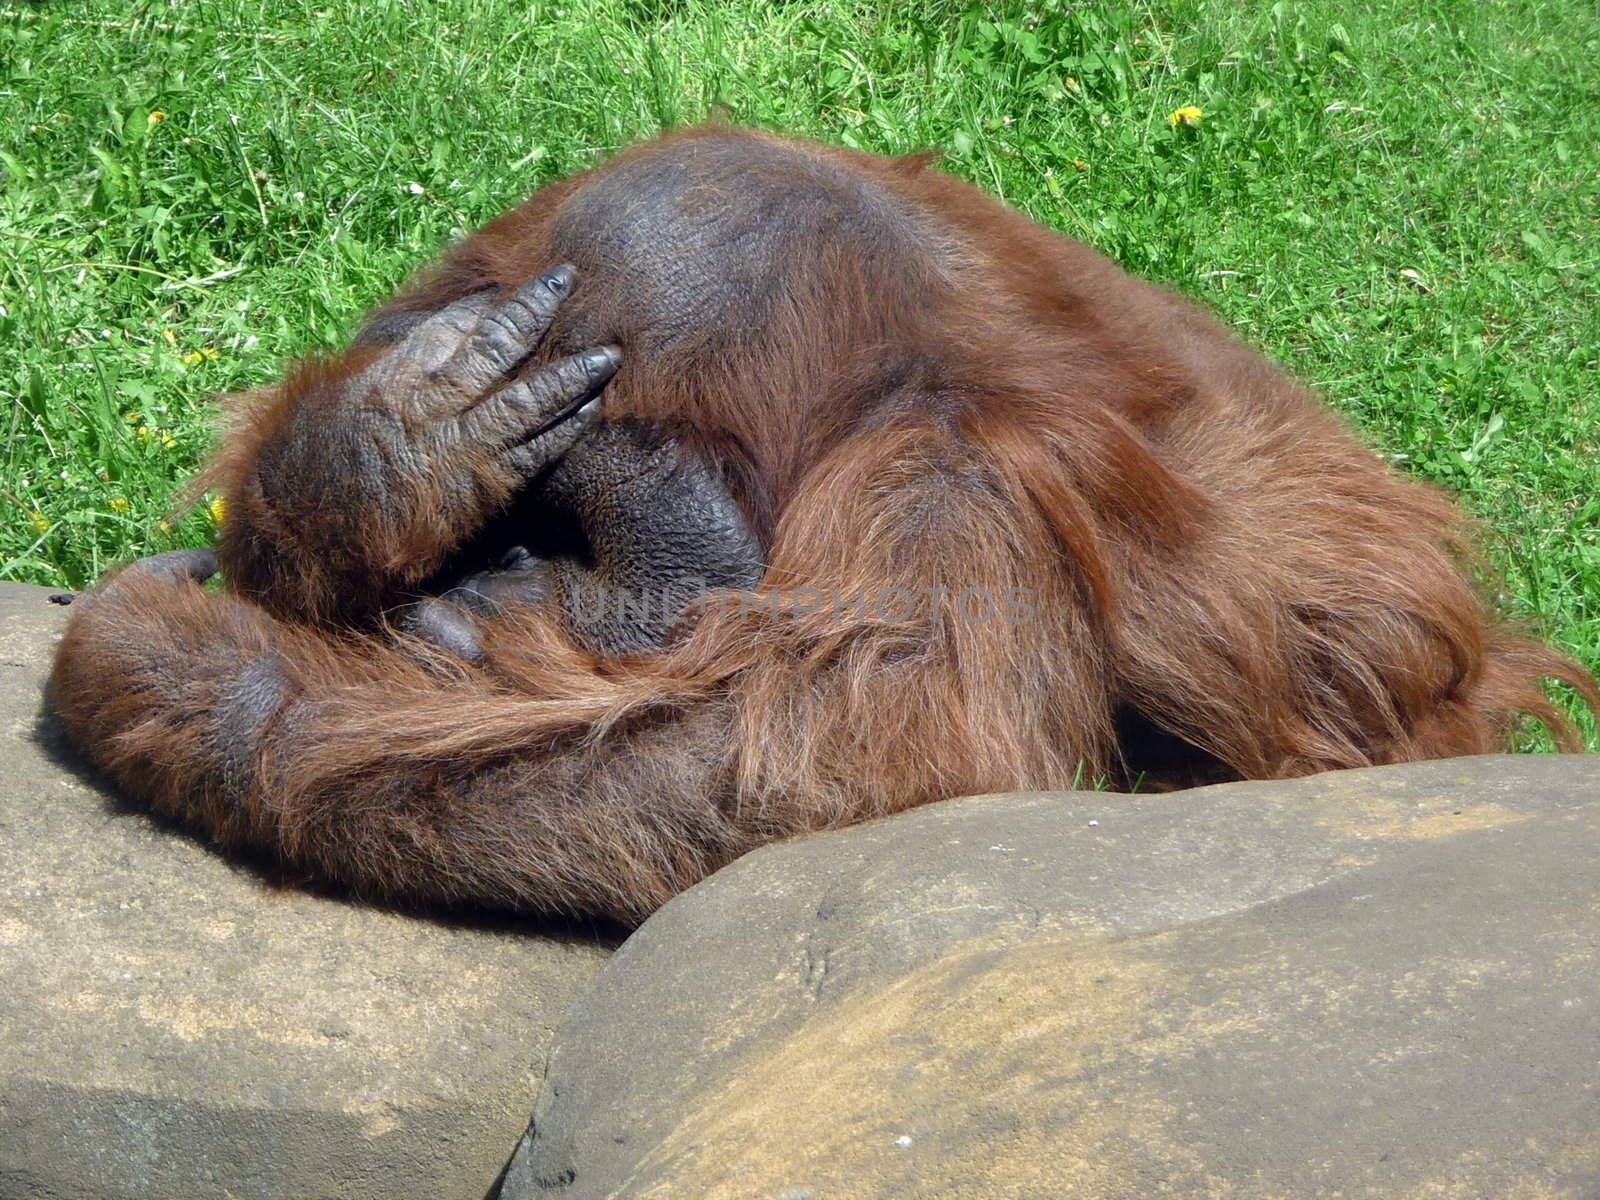 Thinking orangutan on a green lawn background